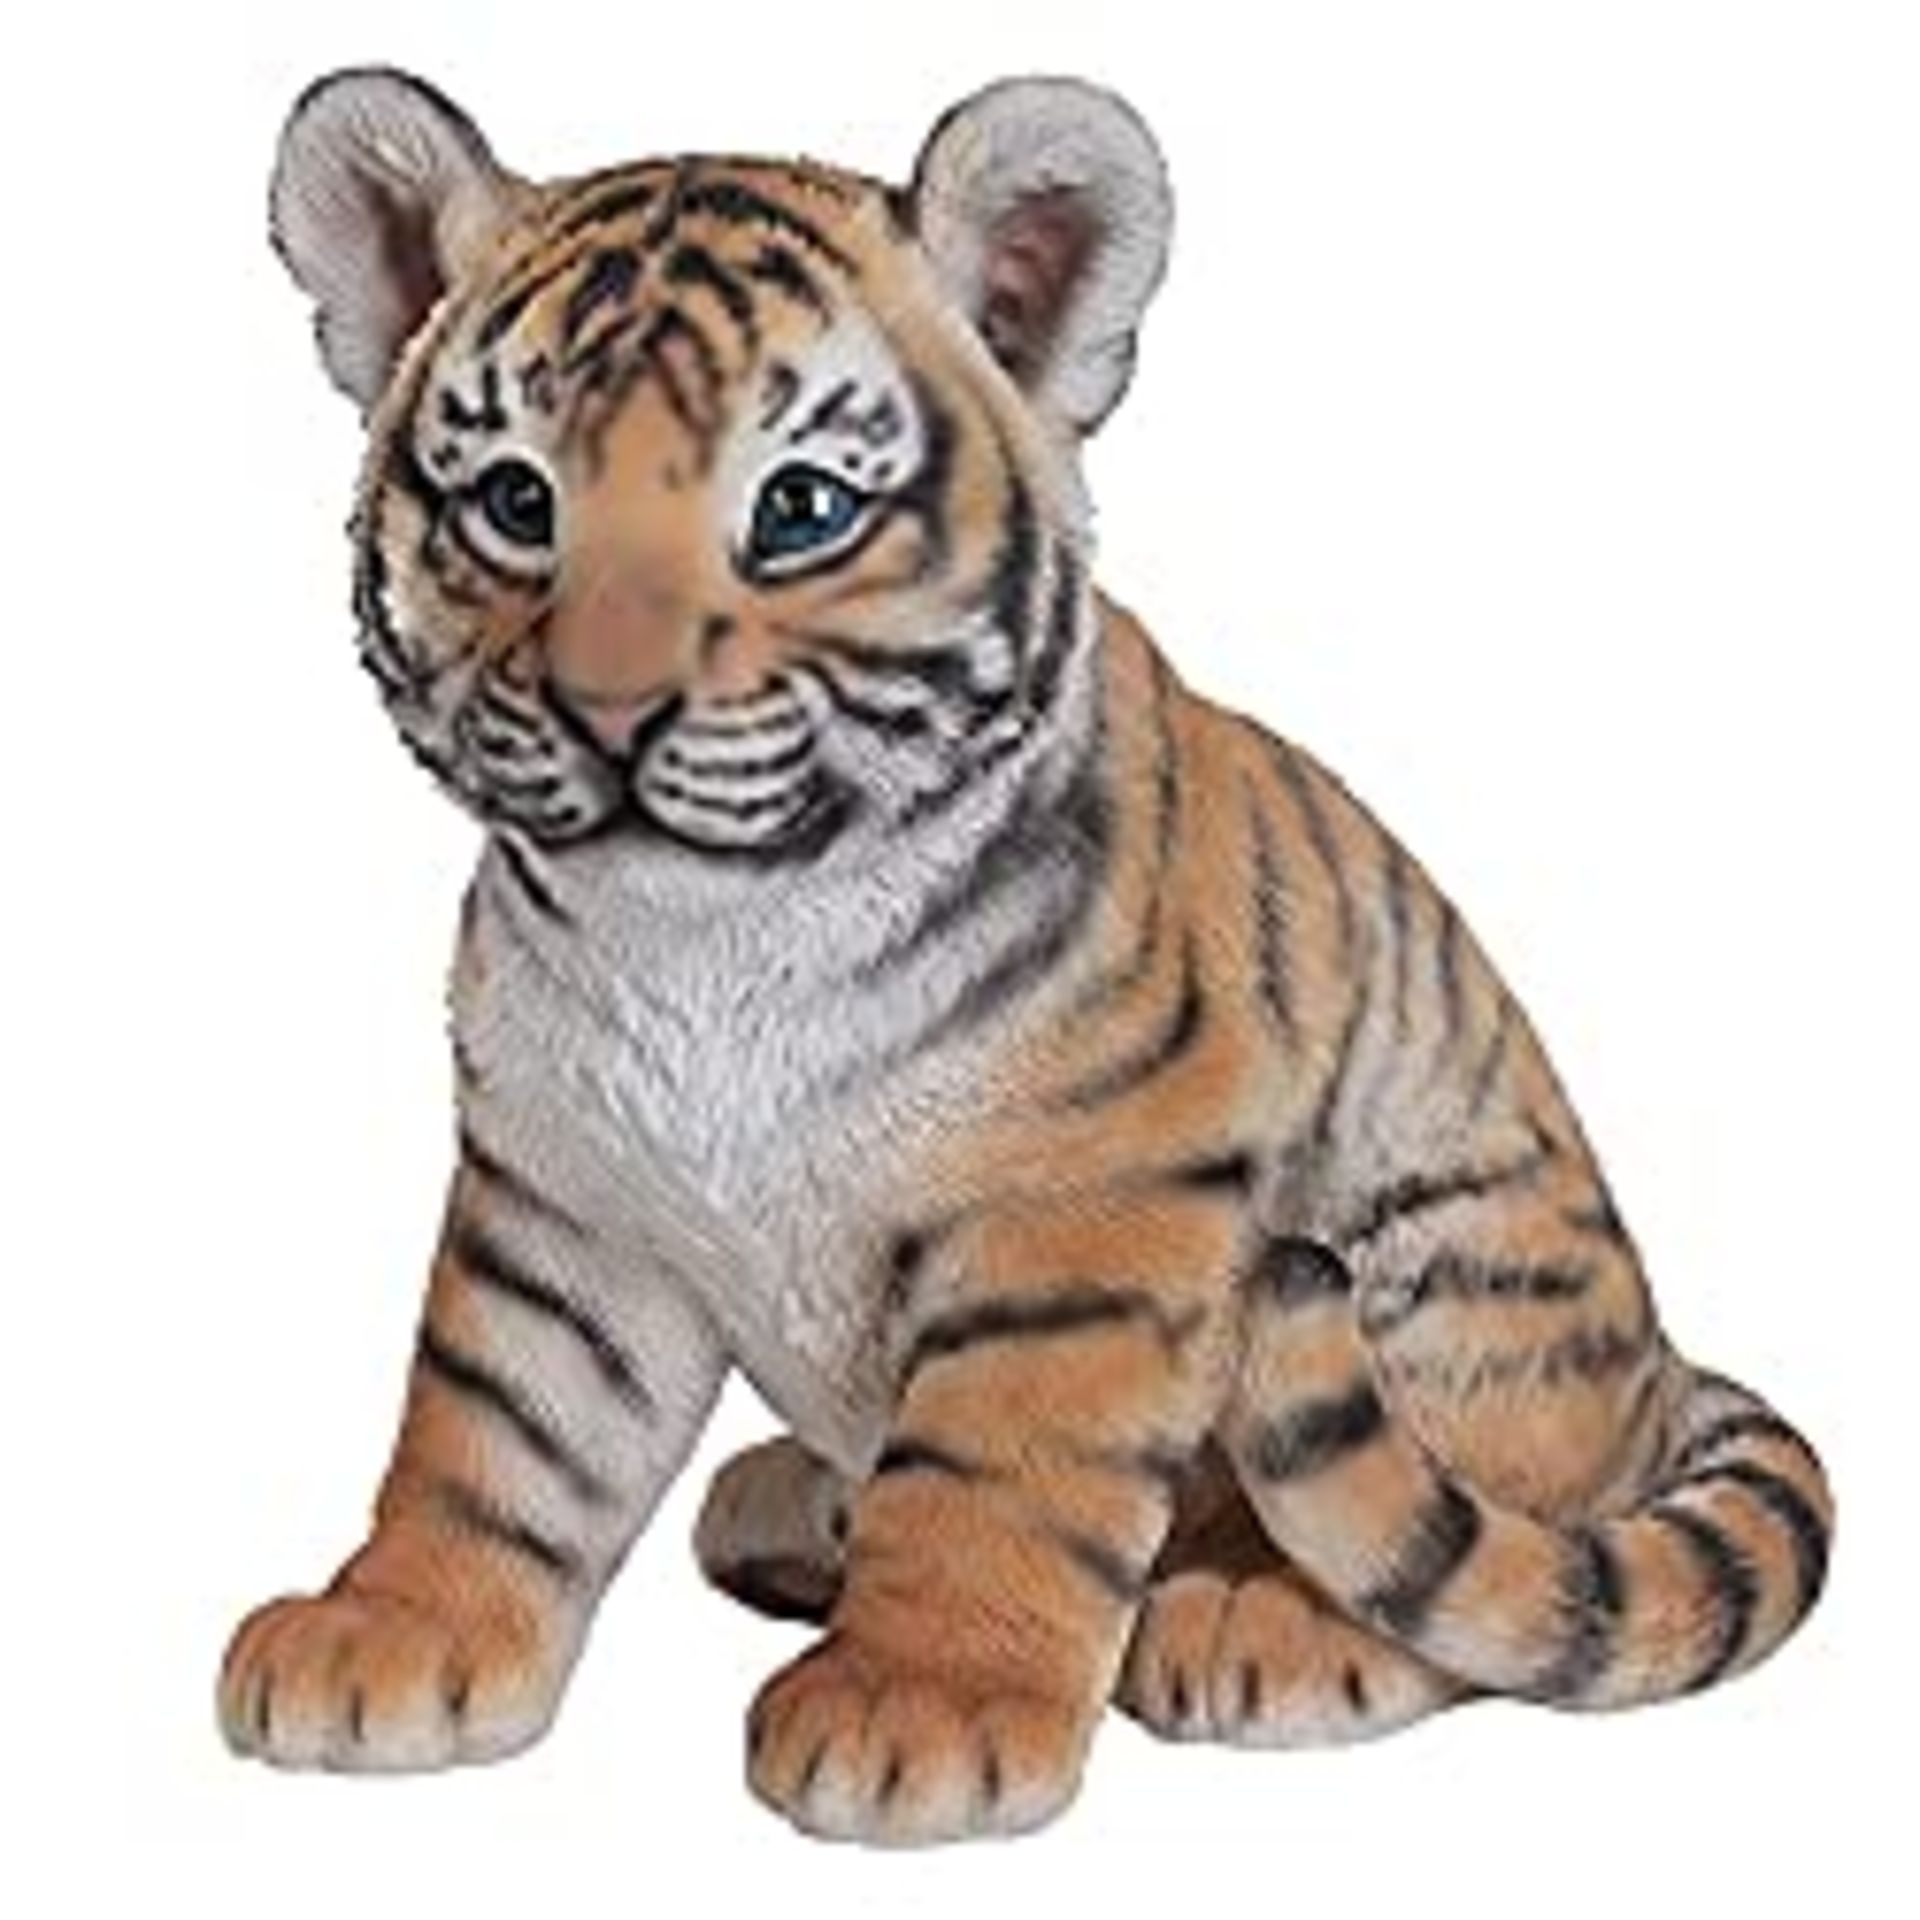 RRP £30.25 Vivid Arts Sitting Tiger Cub Resin Ornament